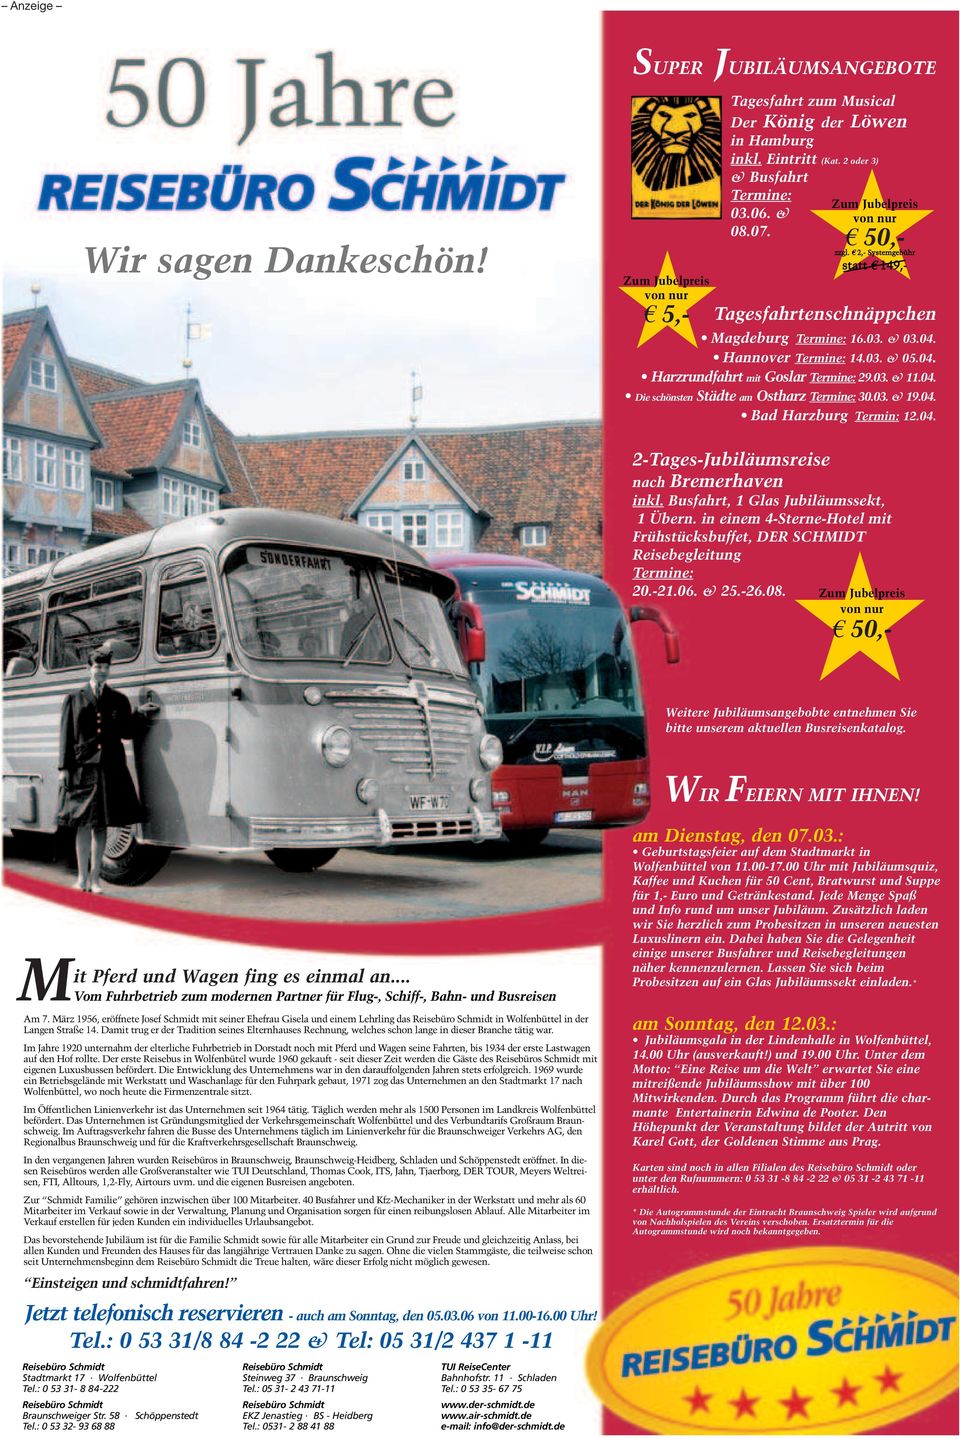 03. & 19.04. Bad Harzburg Termin: 12.04. 2-Tages-Jubiläumsreise nach Bremerhaven inkl. Busfahrt, 1 Glas Jubiläumssekt, 1 Übern.